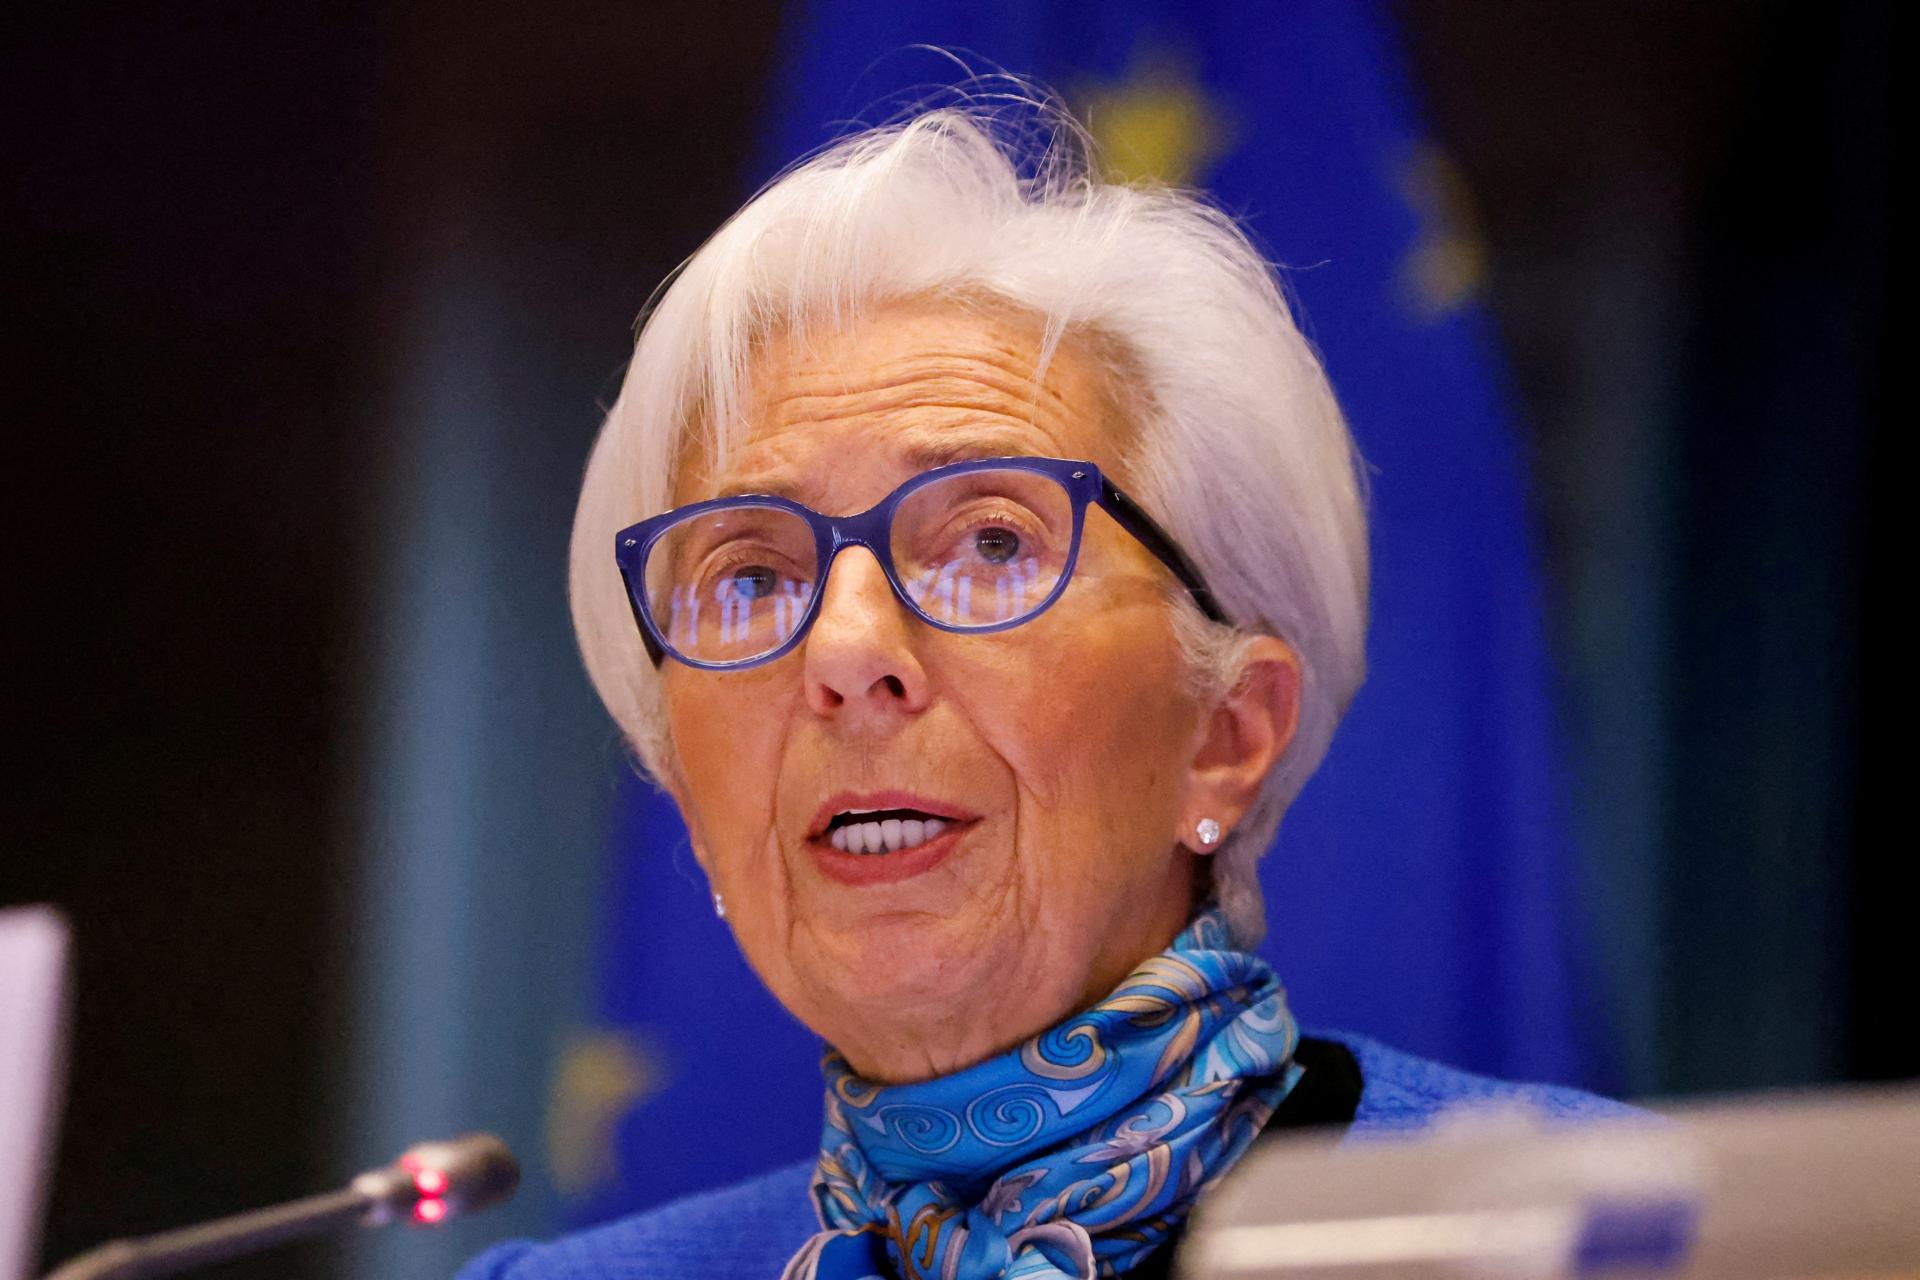 Európska centrálna banka má v boji proti inflácii pred sebou ešte dlhú cestu, vraví Lagardová